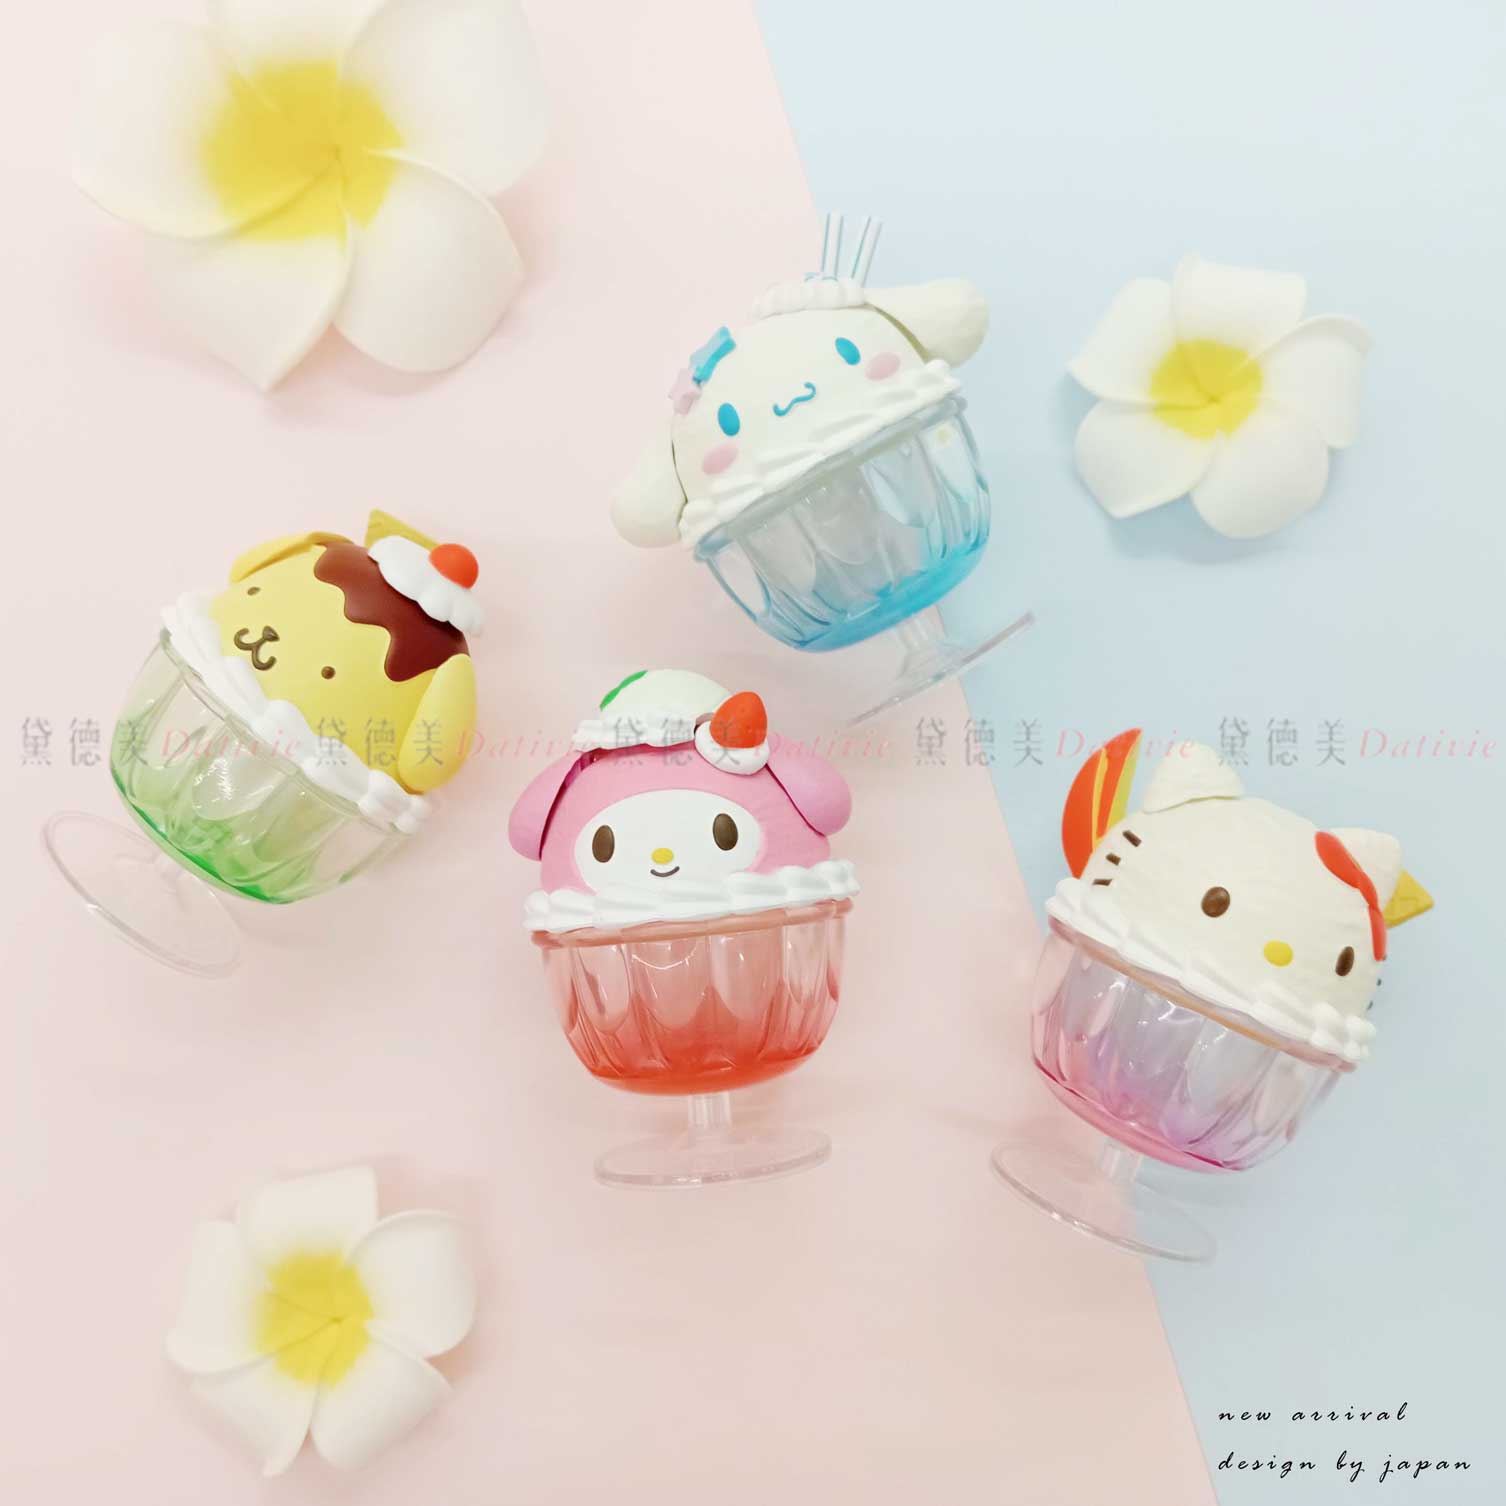 角色甜品小盒子扭蛋 全四種-三麗鷗 Sanrio 日本進口正版授權